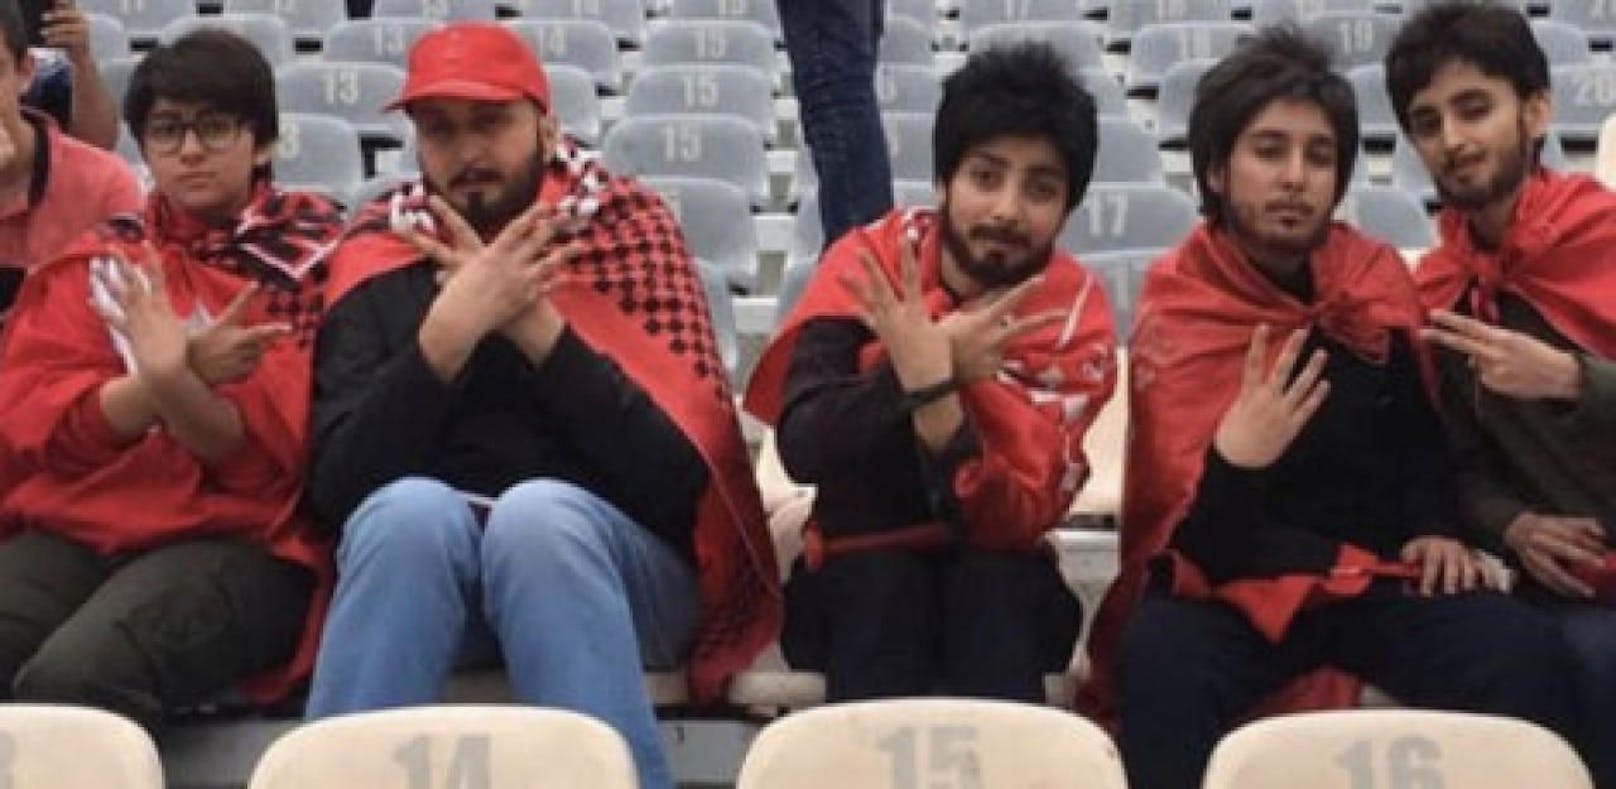 Iranerinnen gehen als Männer ins Stadion